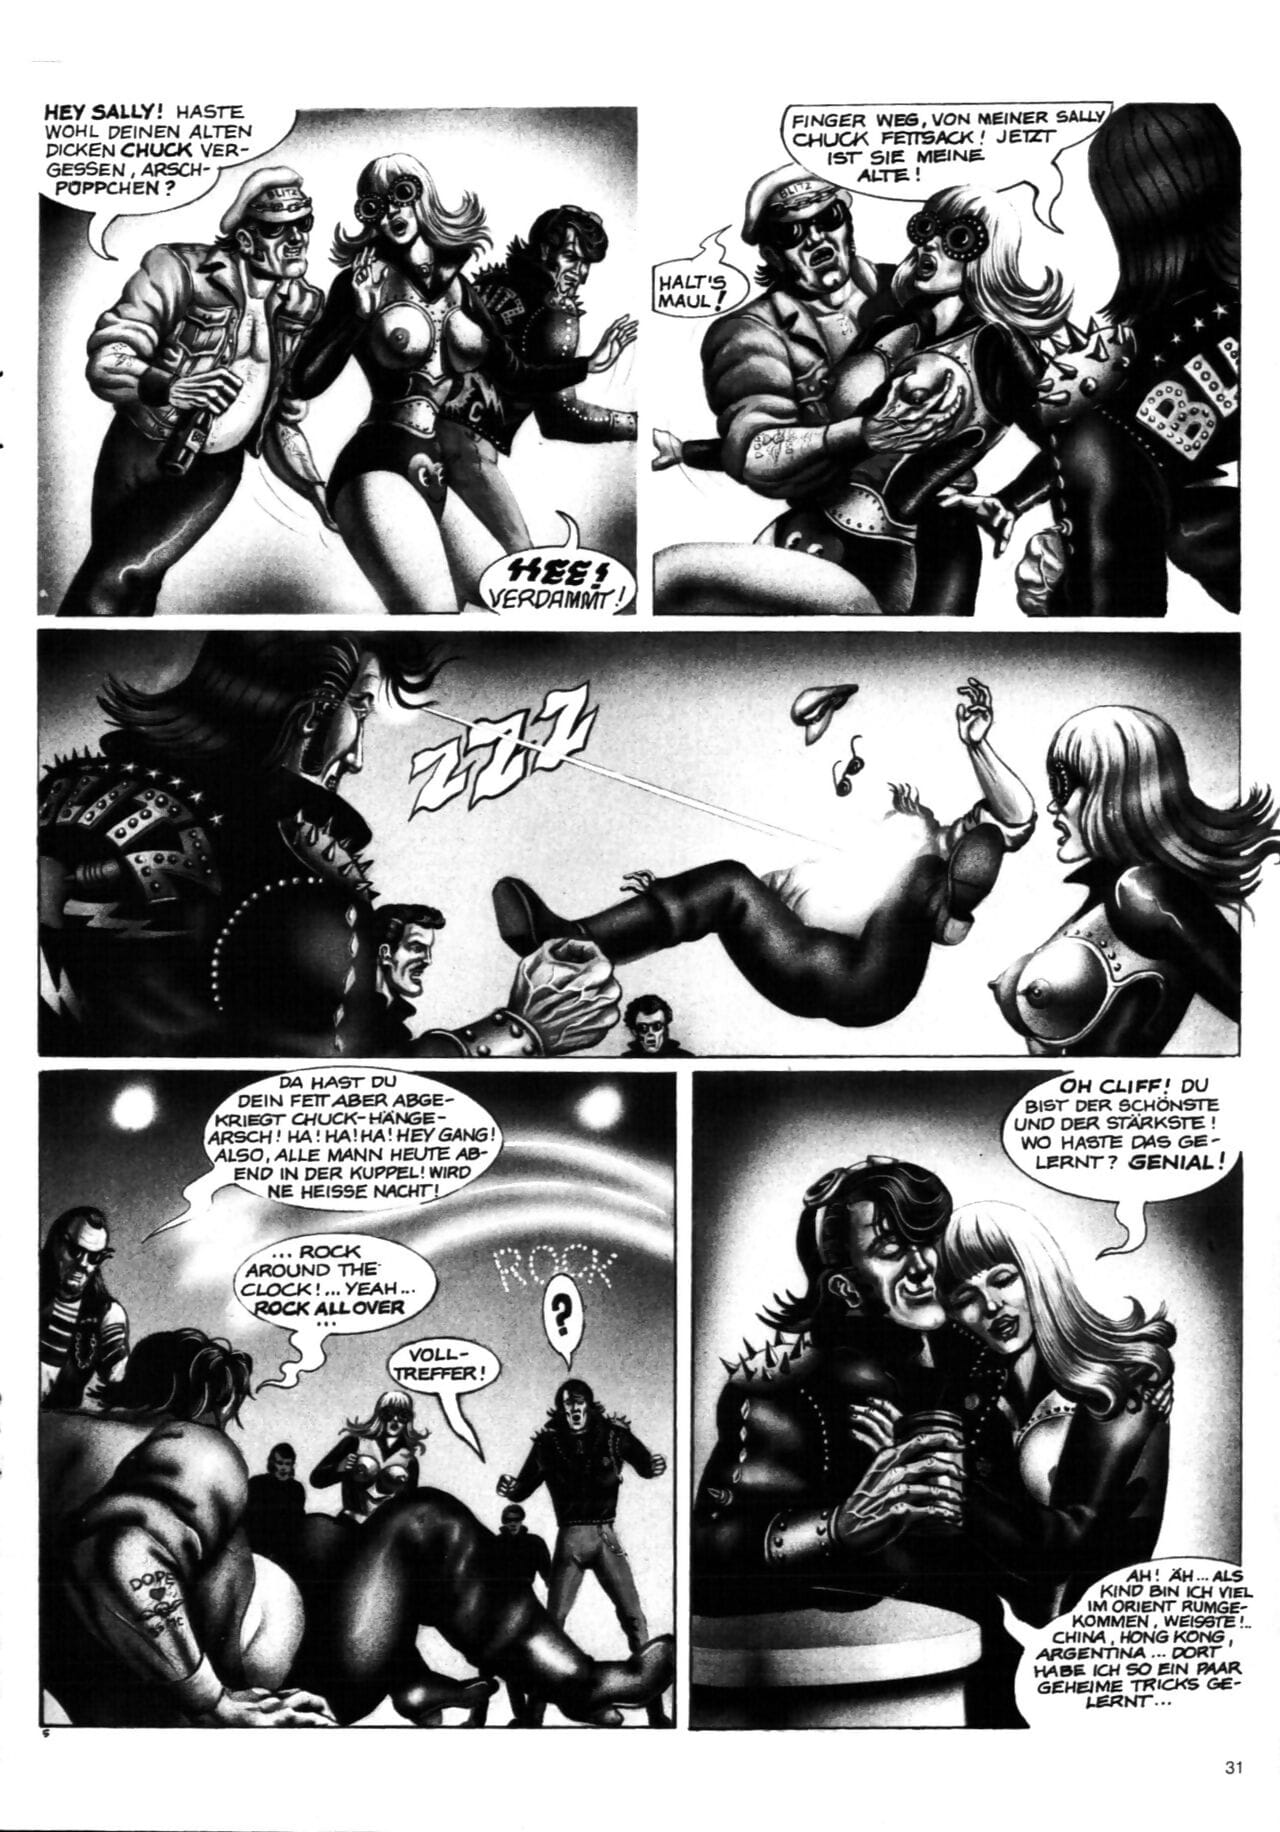 schwermetall #010 część 2 page 1